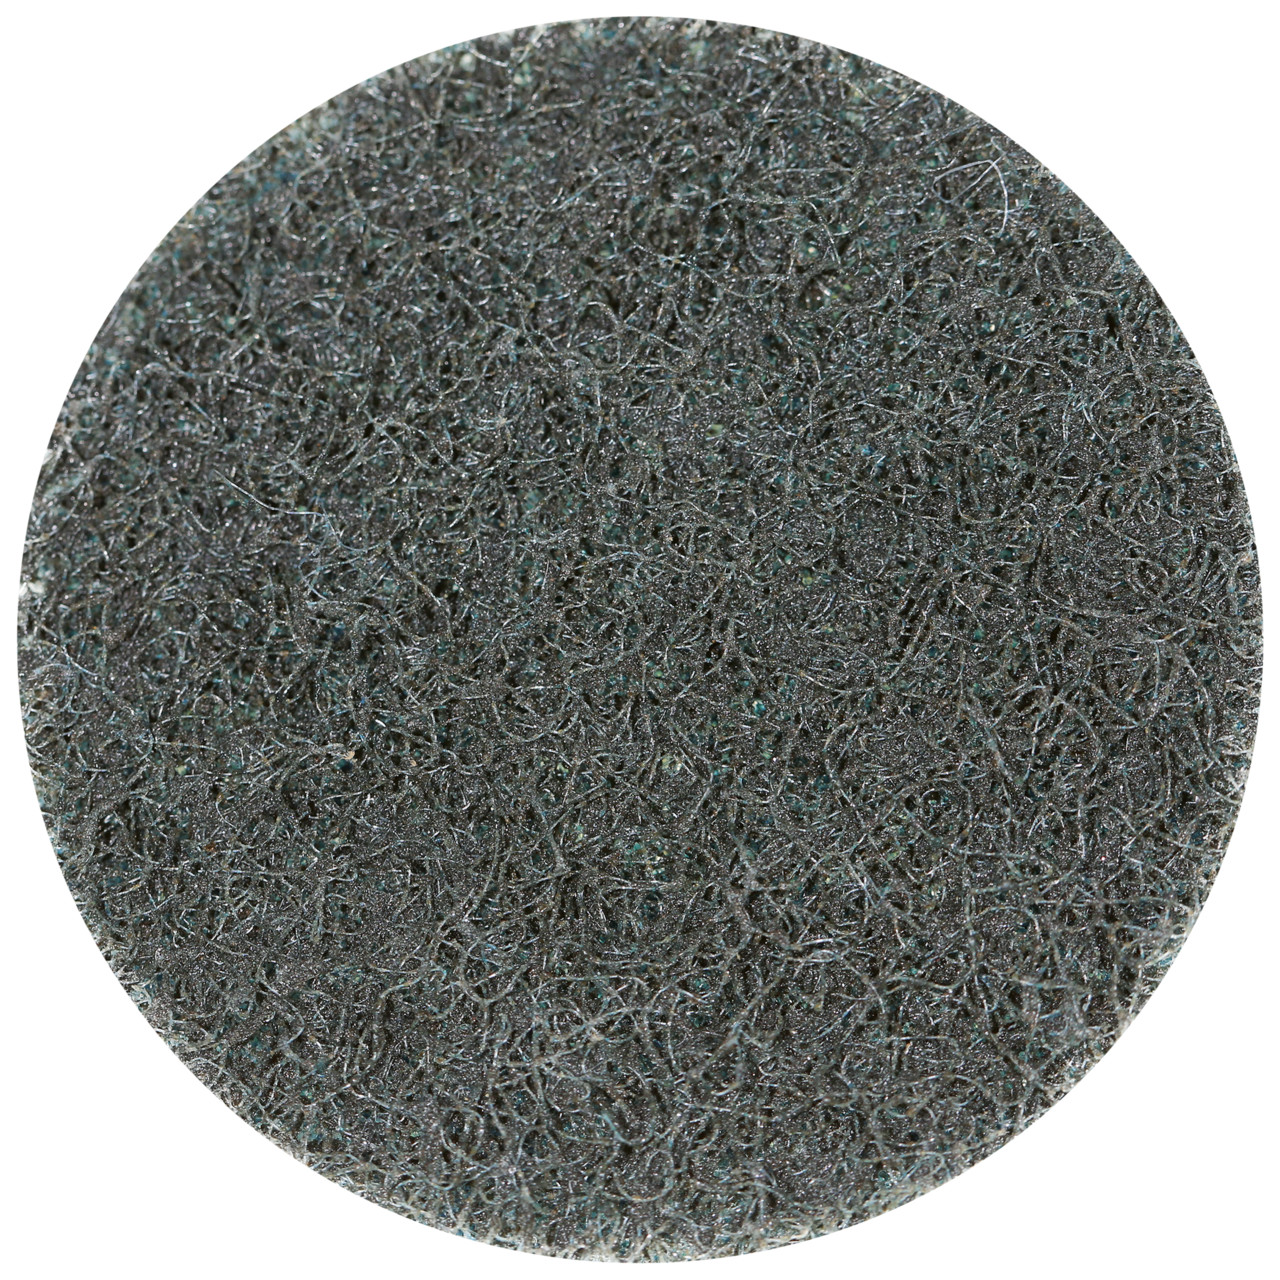 Tyrolit SCM QUICK CHANGE DISC Dimensione 75xS Per acciaio, acciaio inox, metalli non ferrosi, plastica e legno, GROB, forma: QDISC, Art. 112592